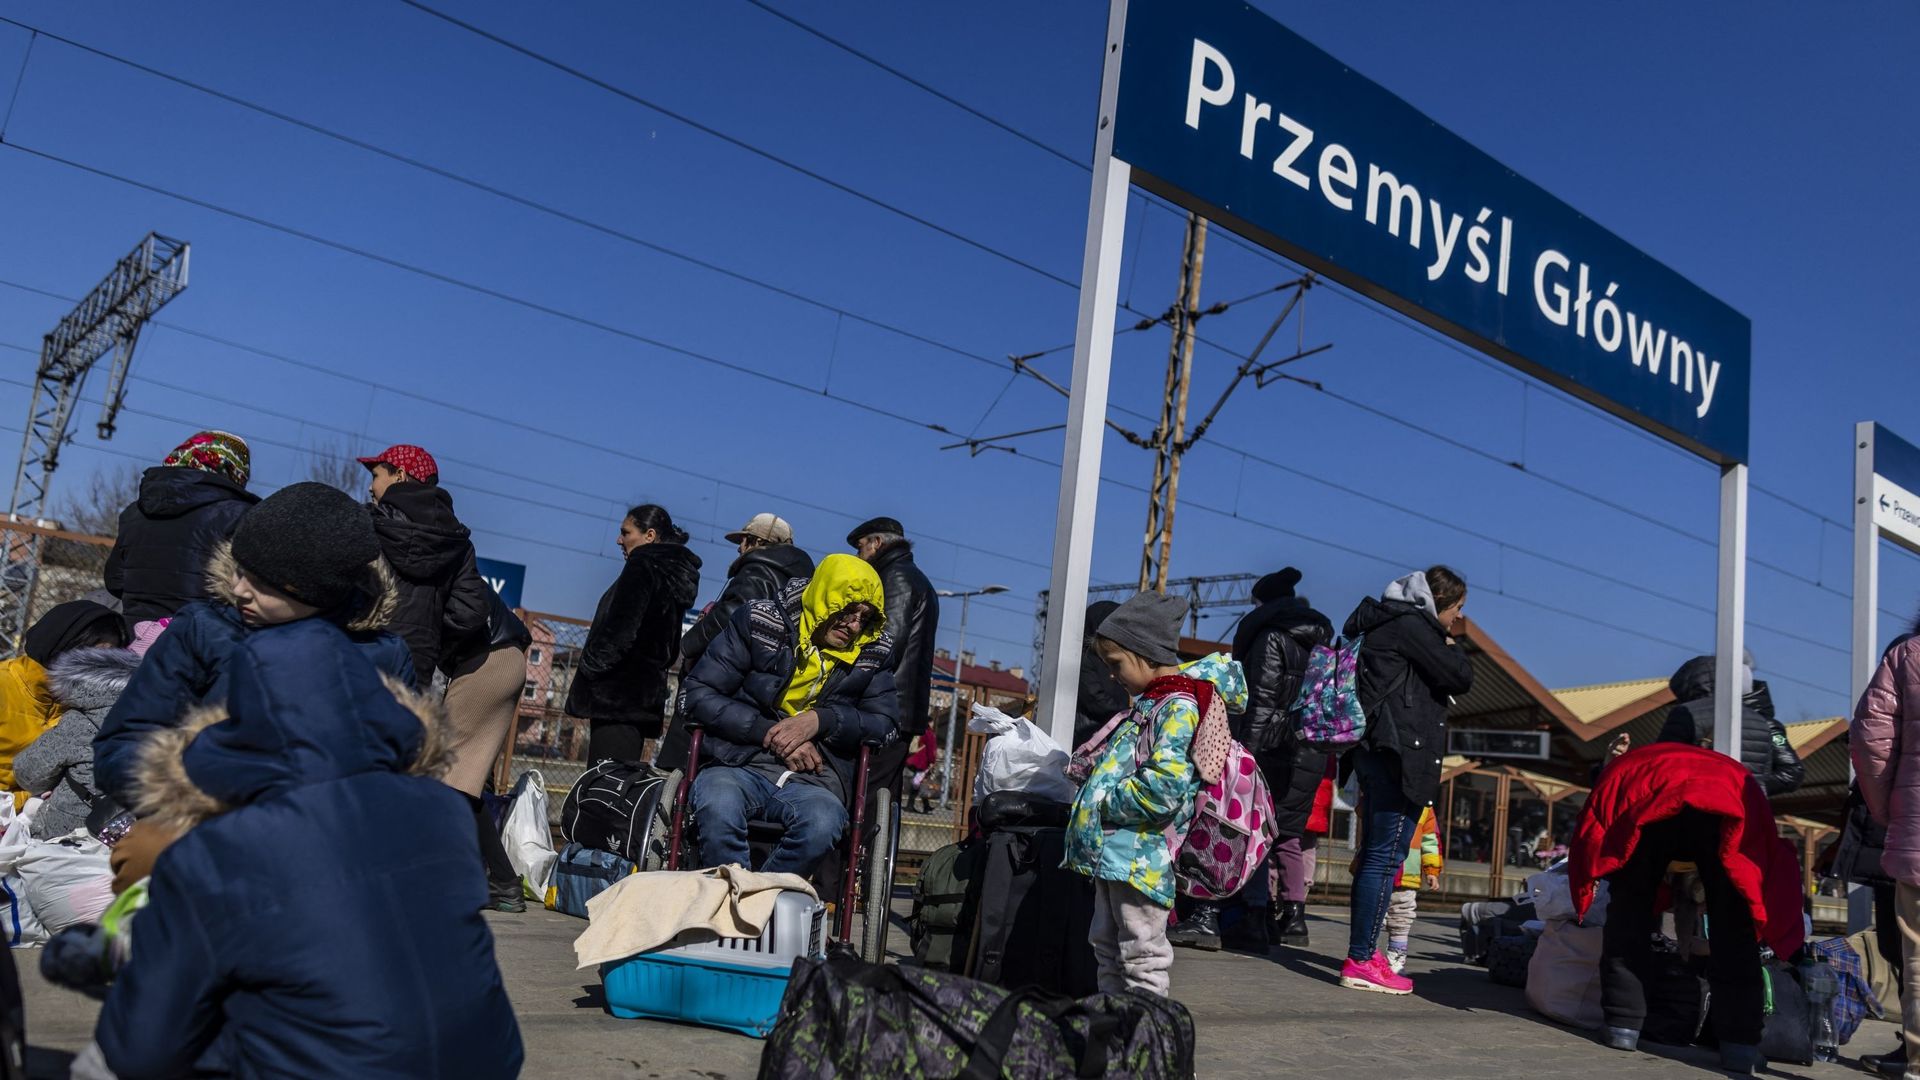 Des réfugiés attendant un transport à la station de raiway de Przemysl, en Pologne, le 17 mars 2022.